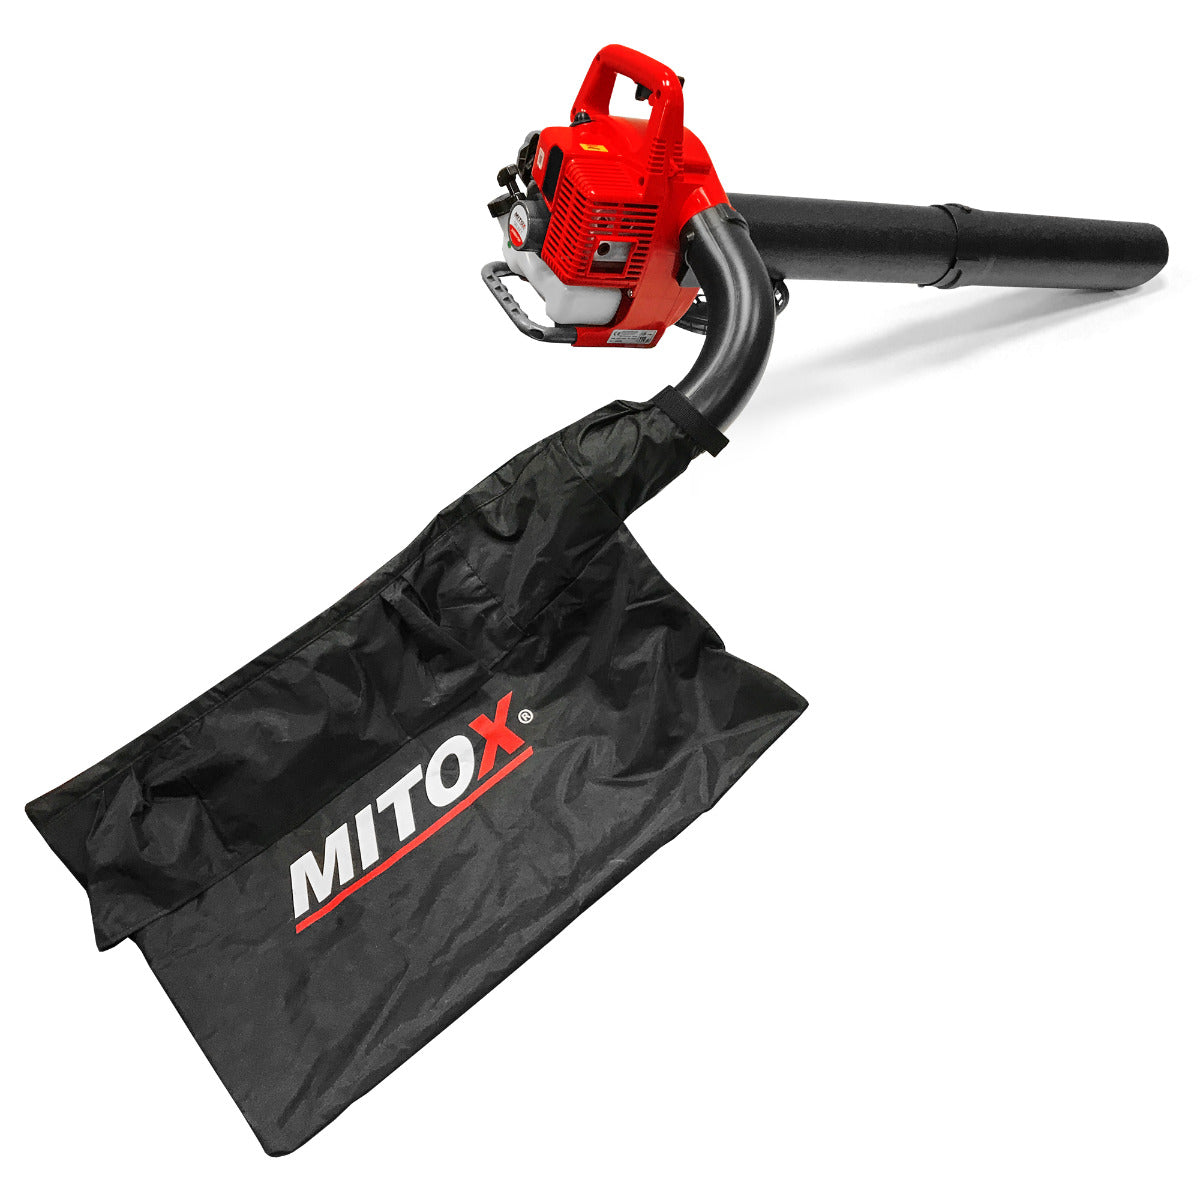 Mitox 28BV-SP Petrol Blower Vac